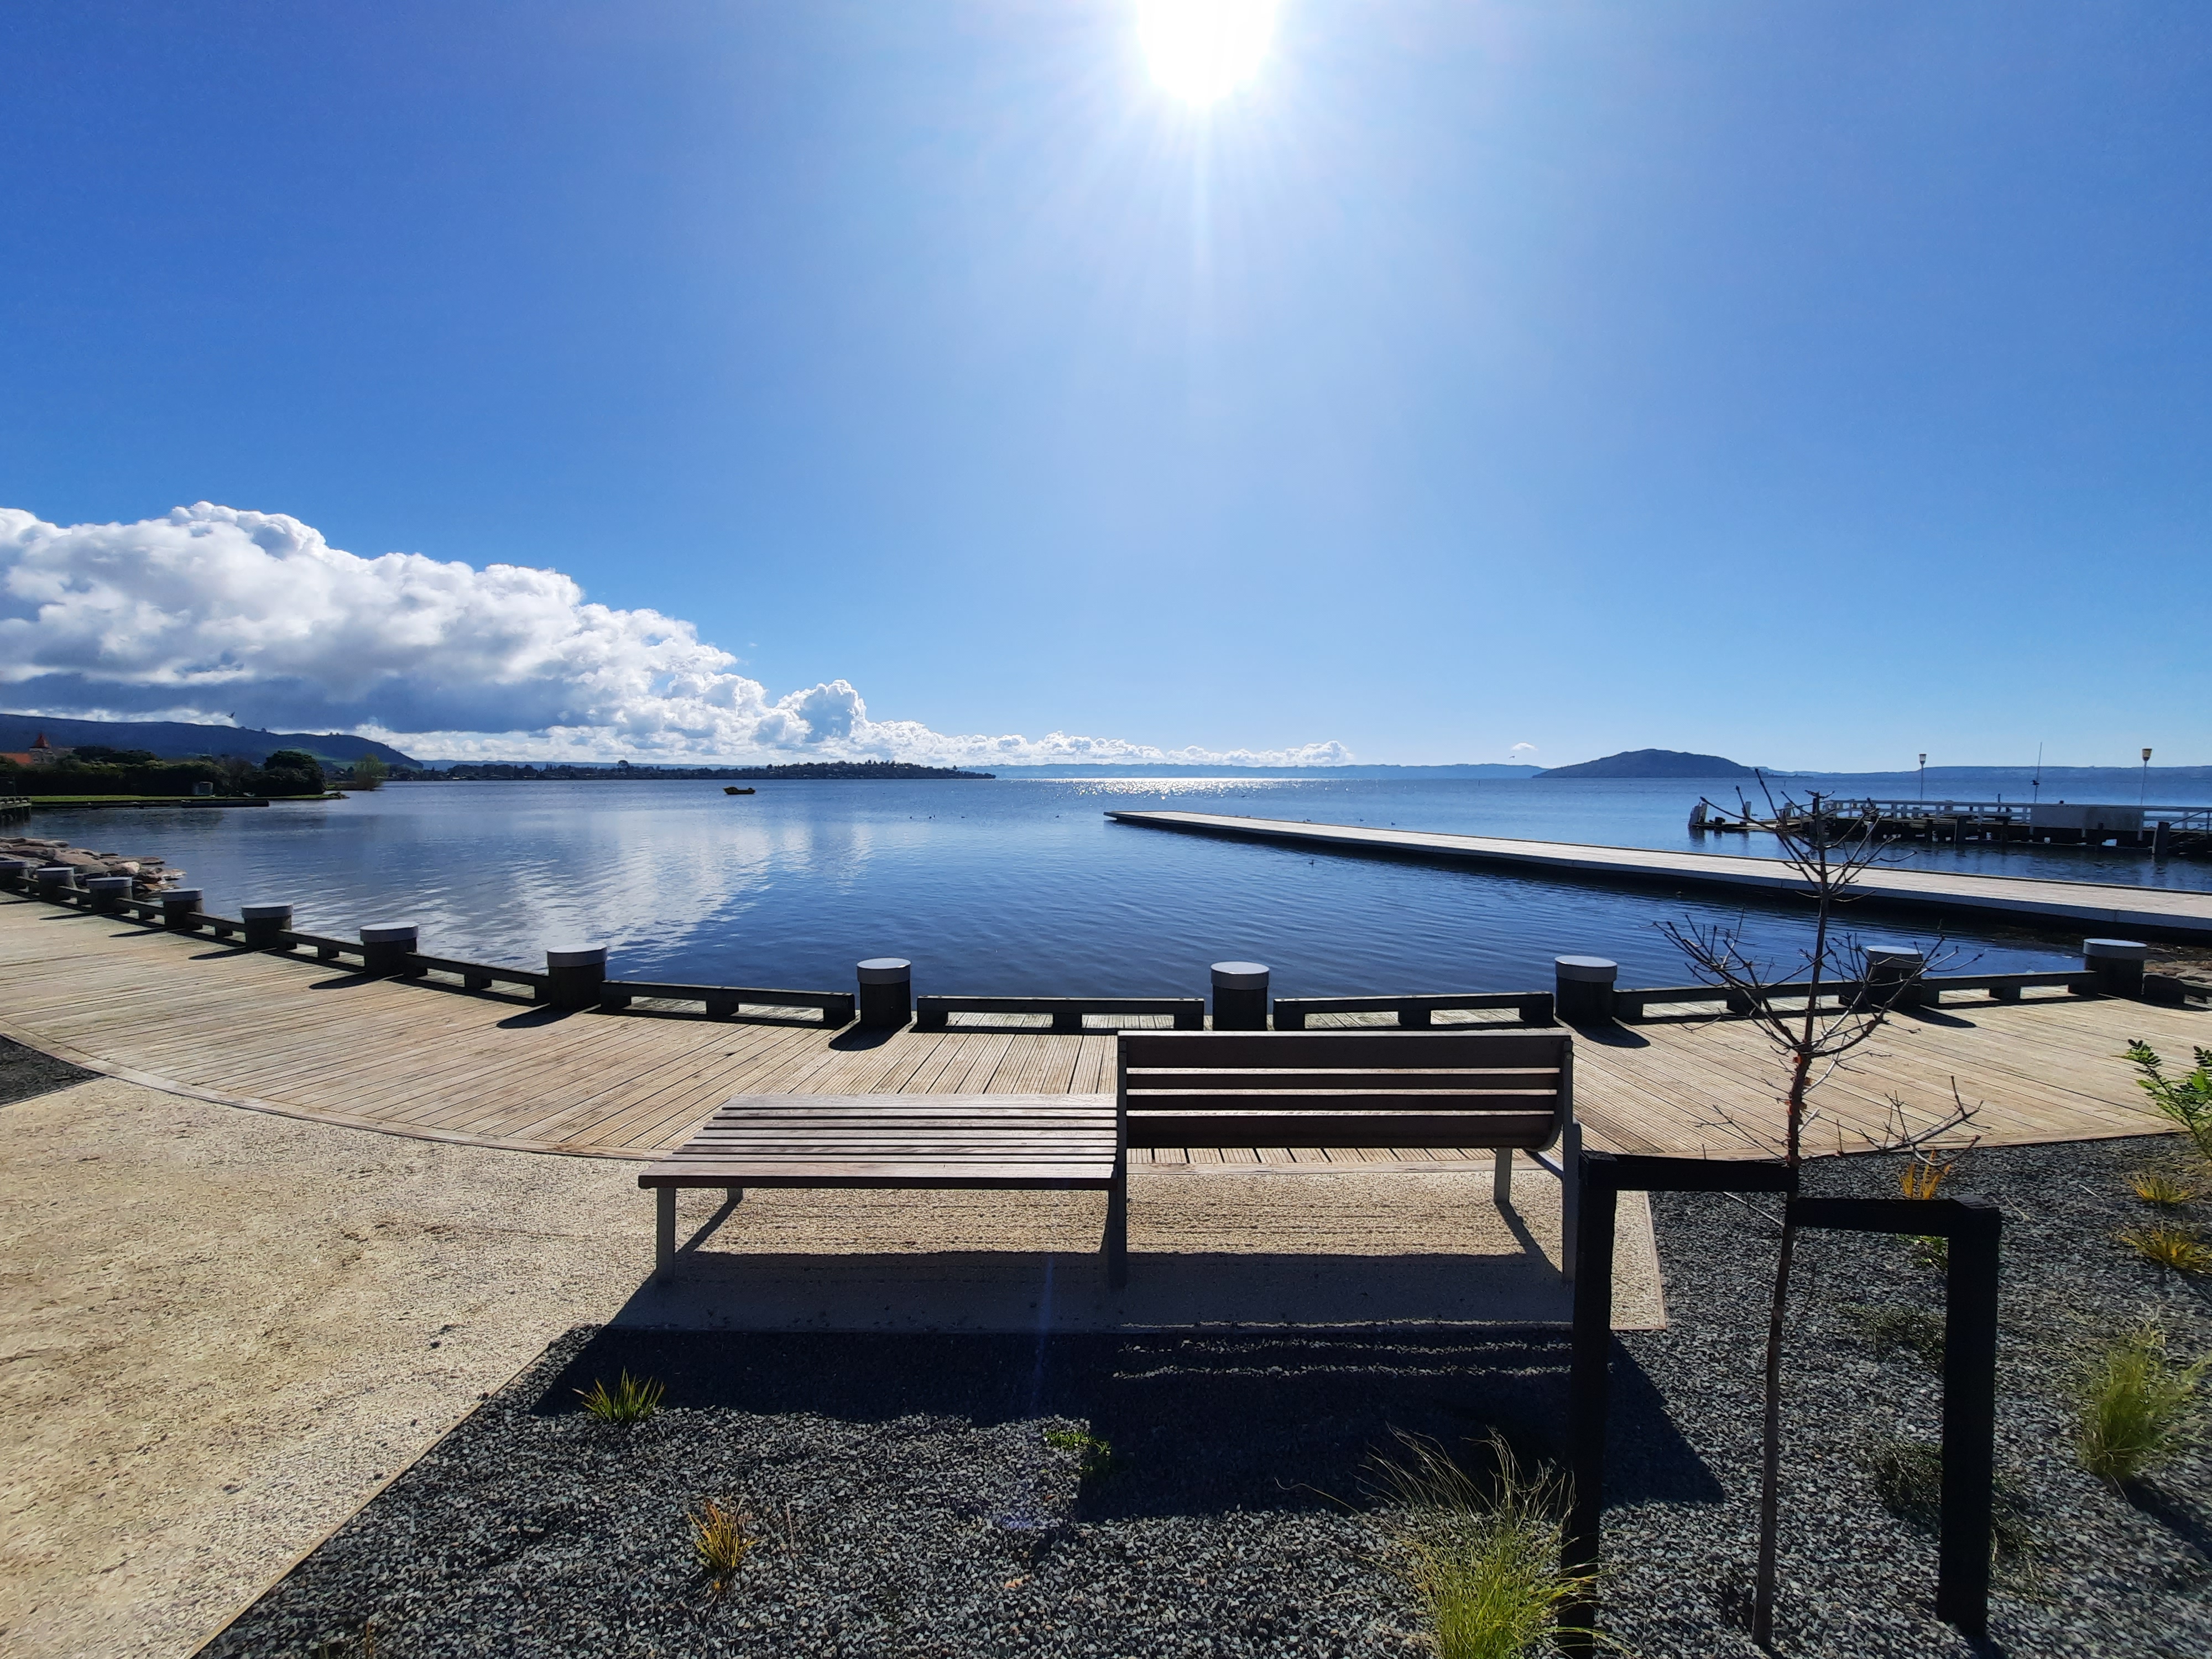 Rotorua lakefront boardwalk